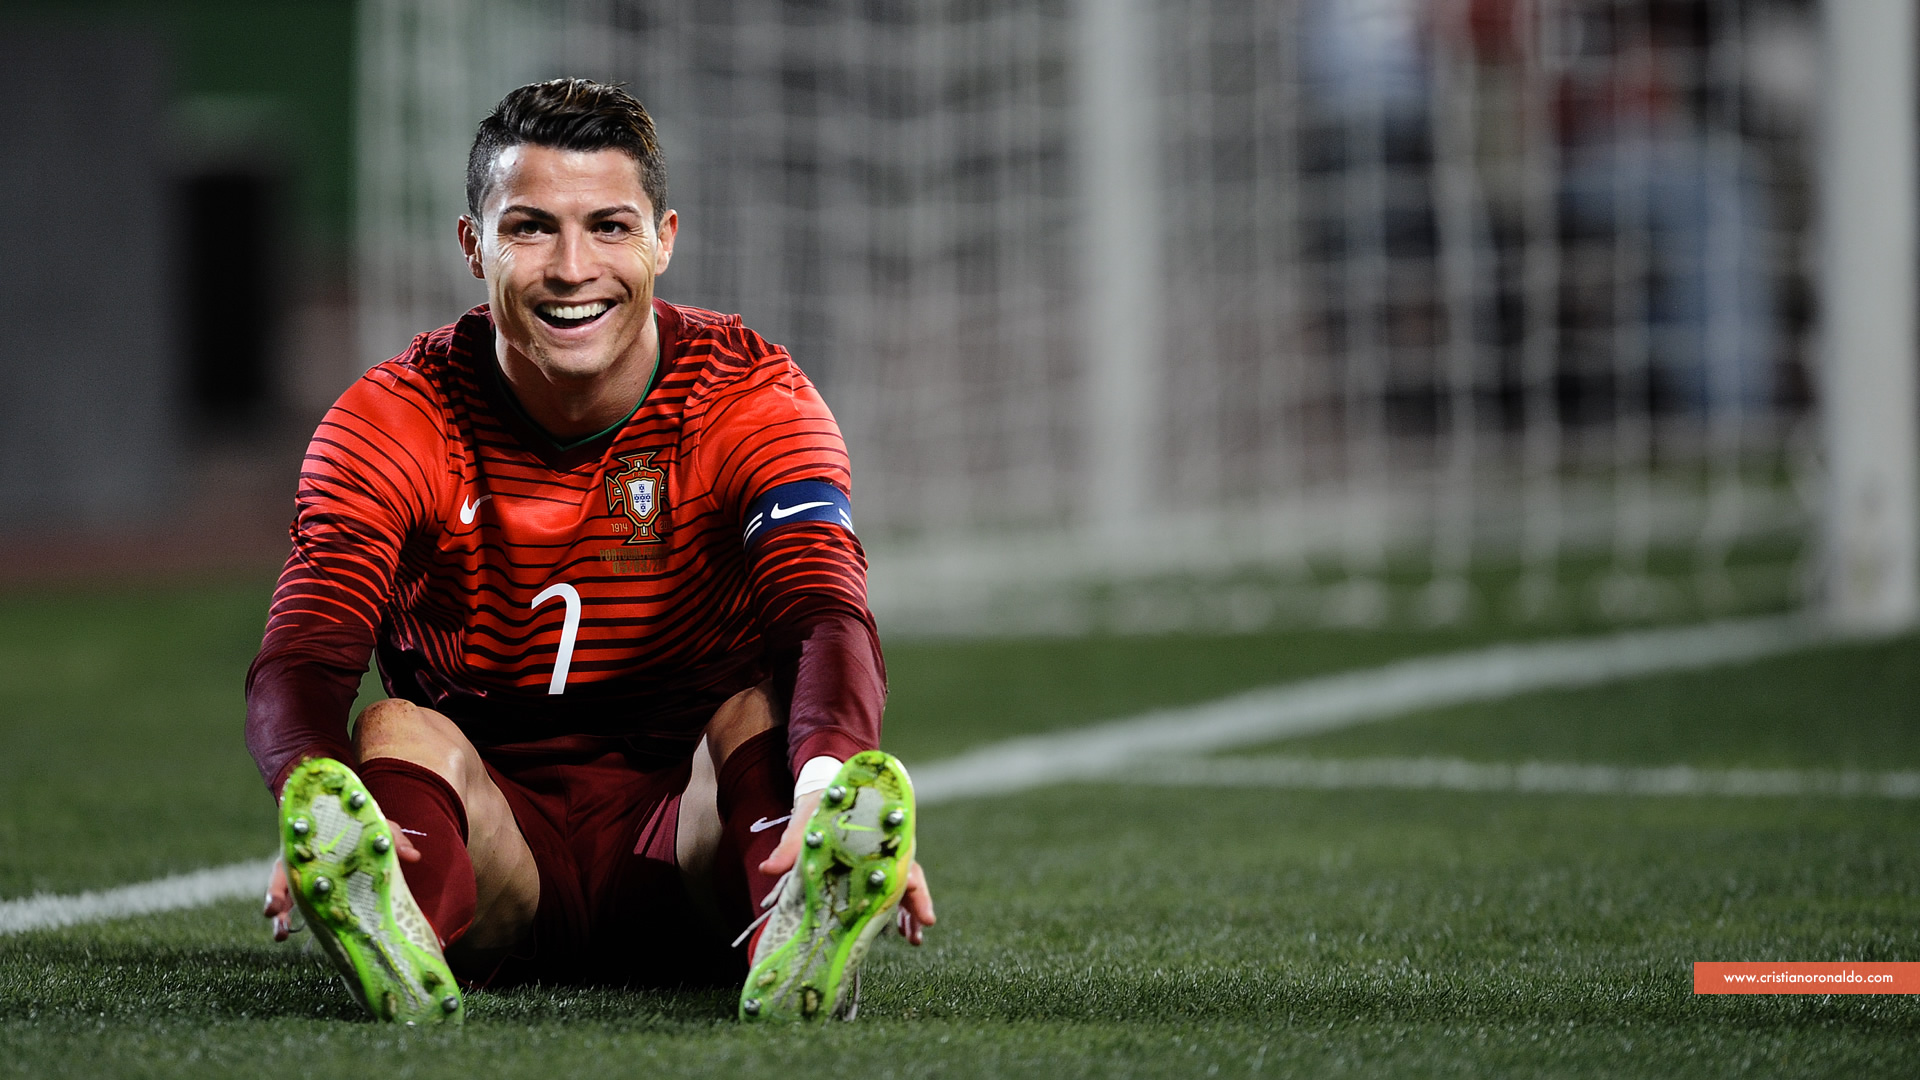 Cristiano Ronaldo smiling in Portugal jersey wallpaper - Cristiano